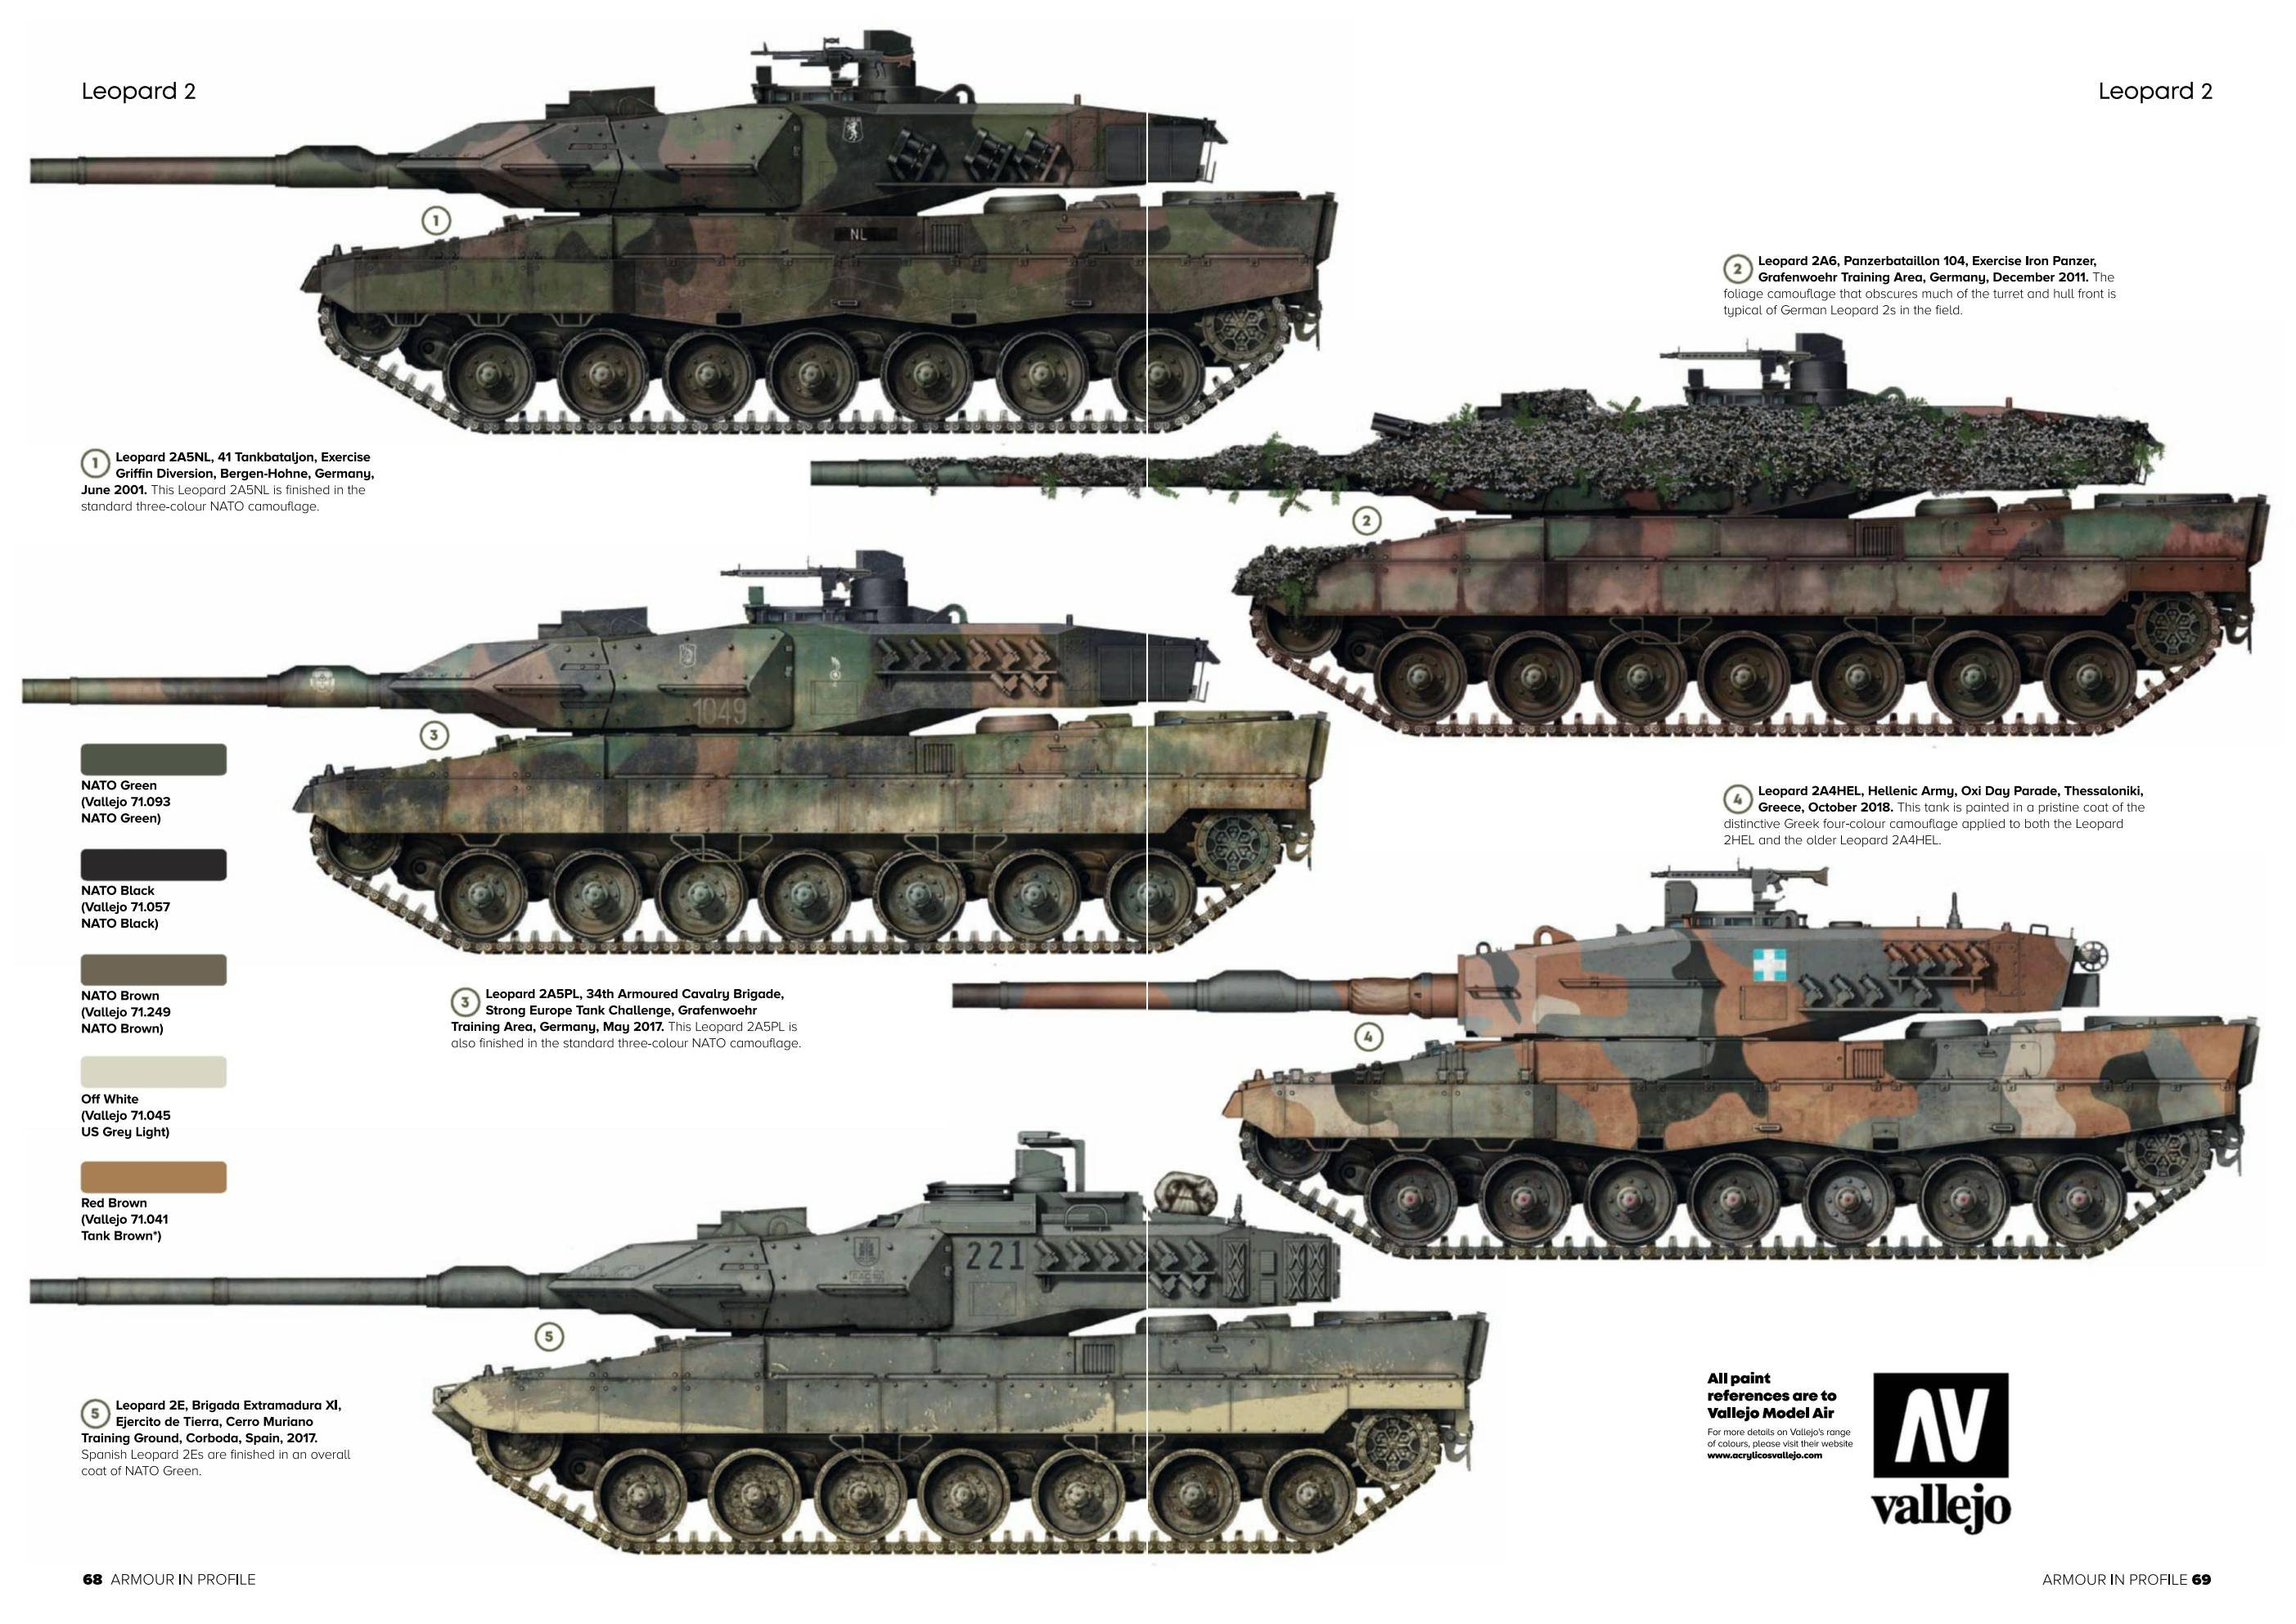 Британский танк «челленджер 2» — возвращение британии в элитный танковый клуб